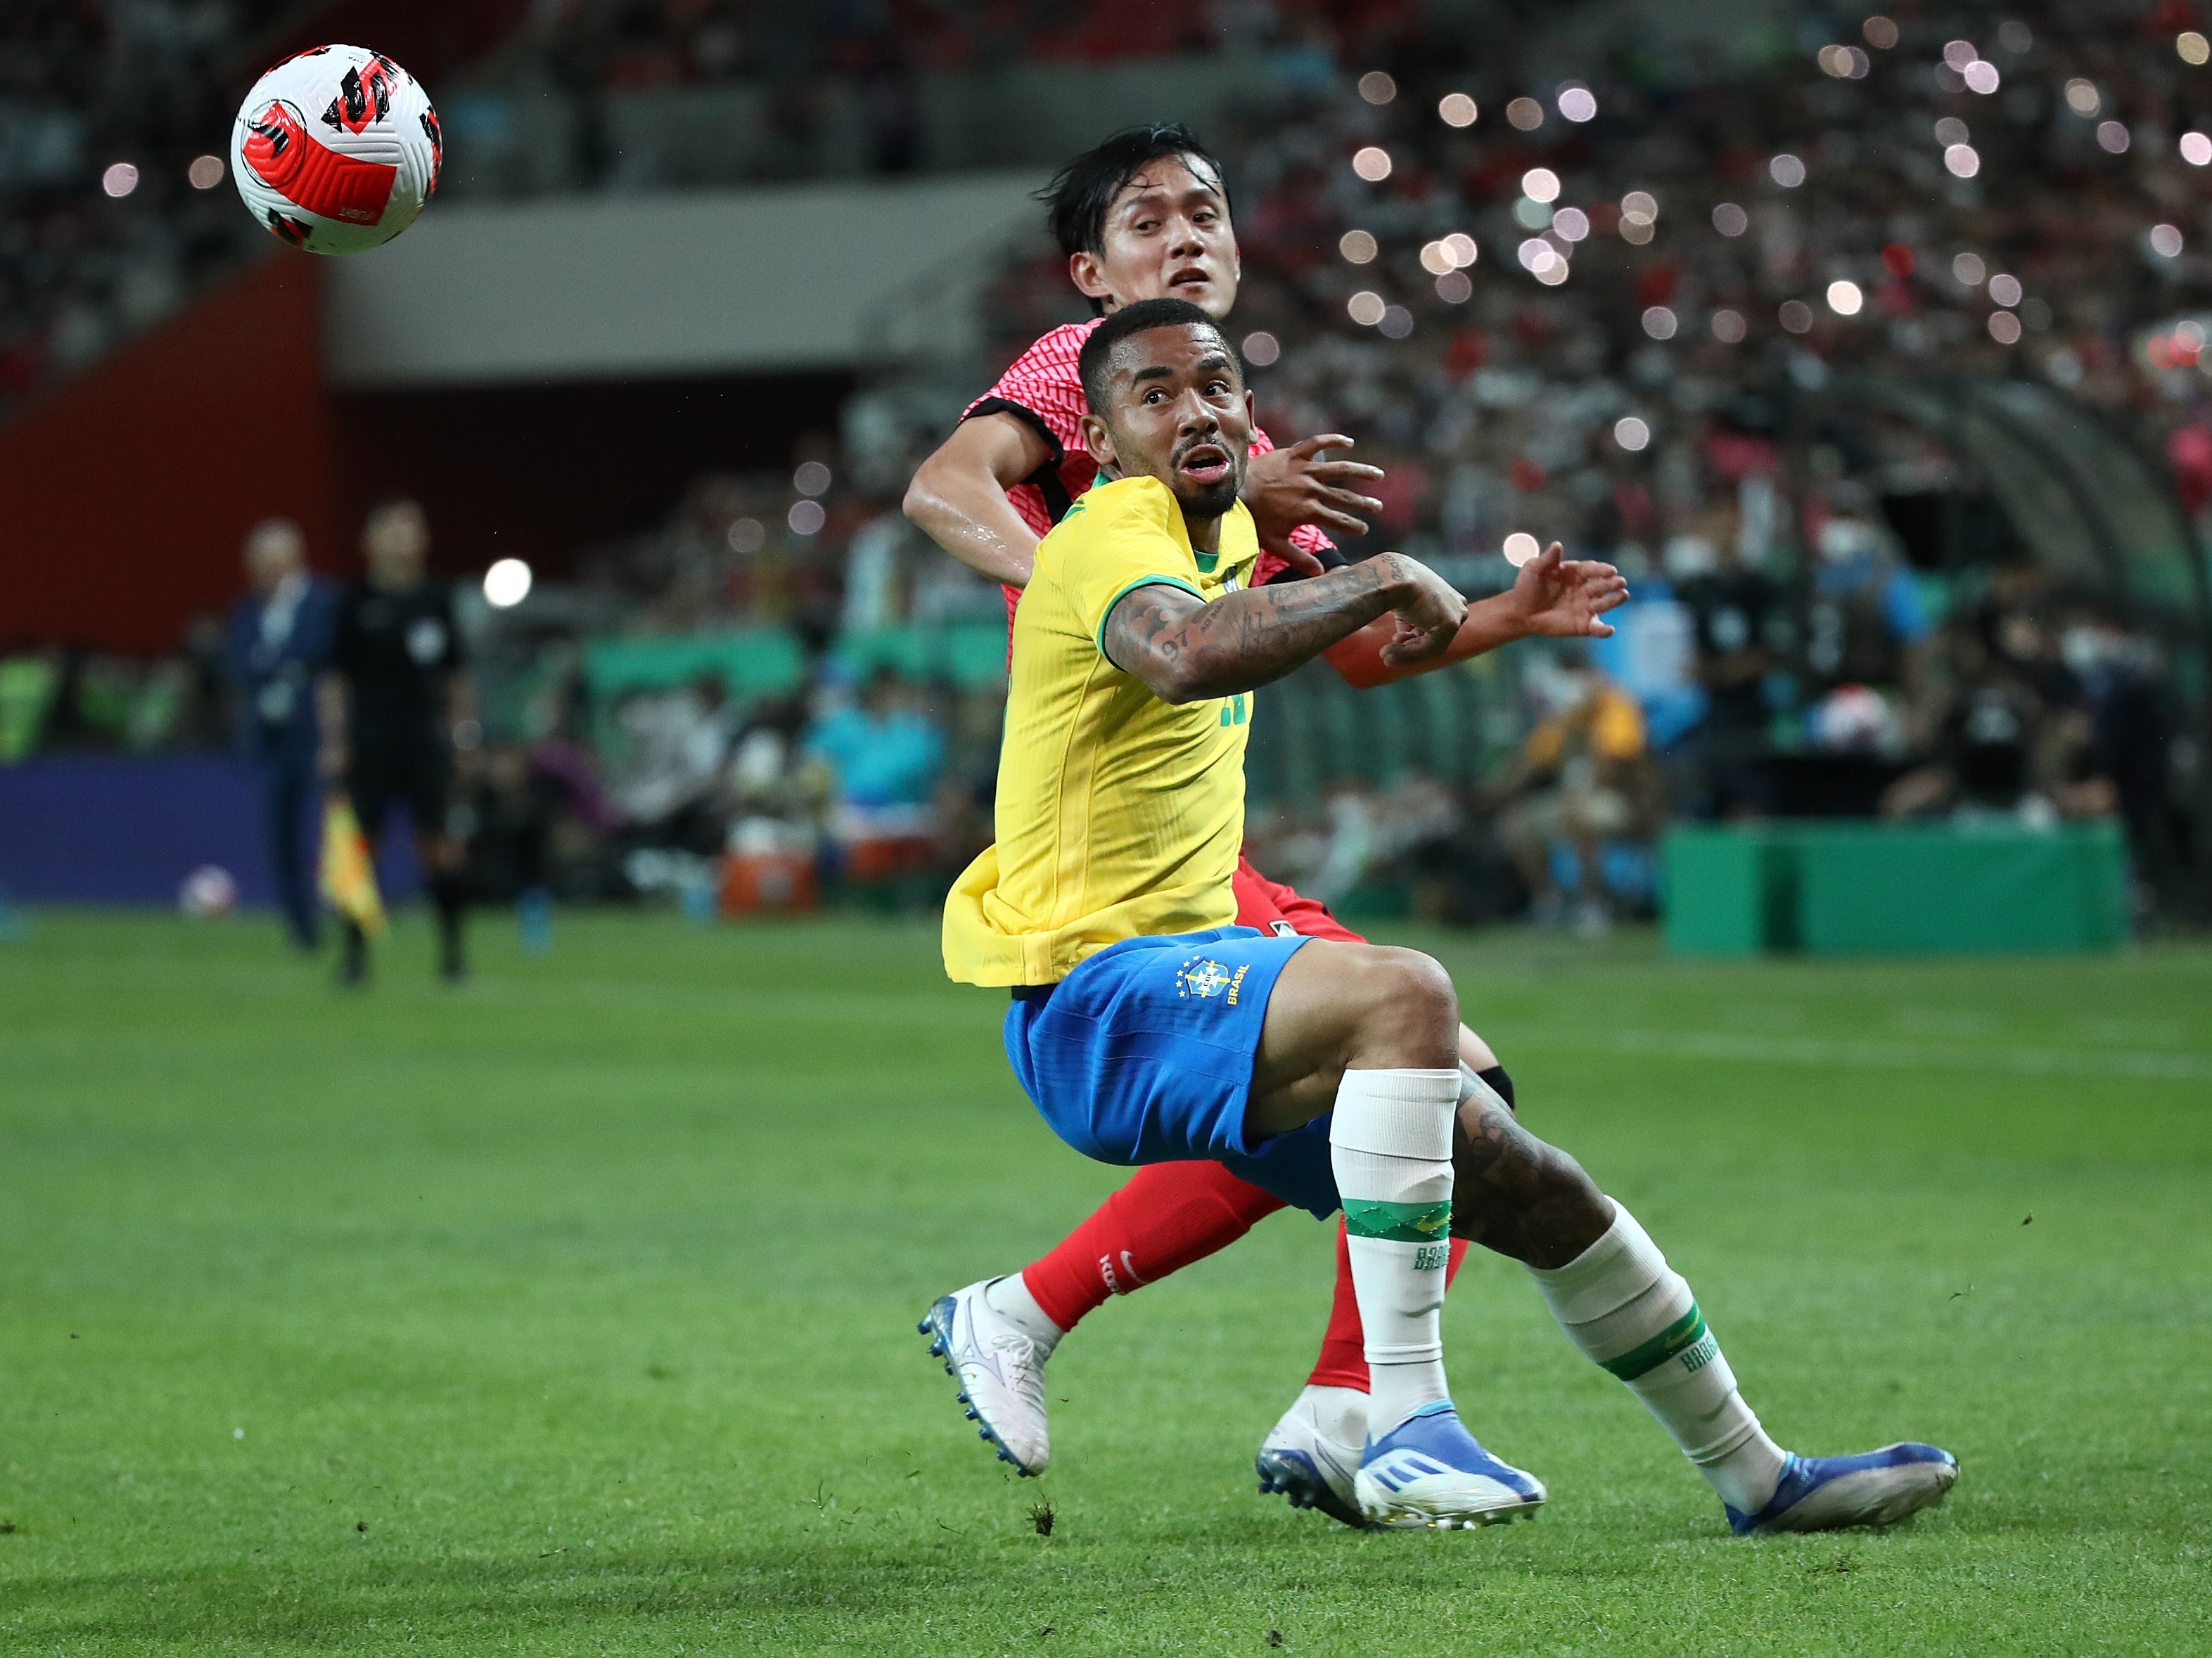 CBF Futebol on X: FIM DE JOGO! Brasil goleou a Coreia do Sul no primeiro  amistoso deste período de preparação. Vamos pra cima! 🇧🇷 5x1 🇰🇷